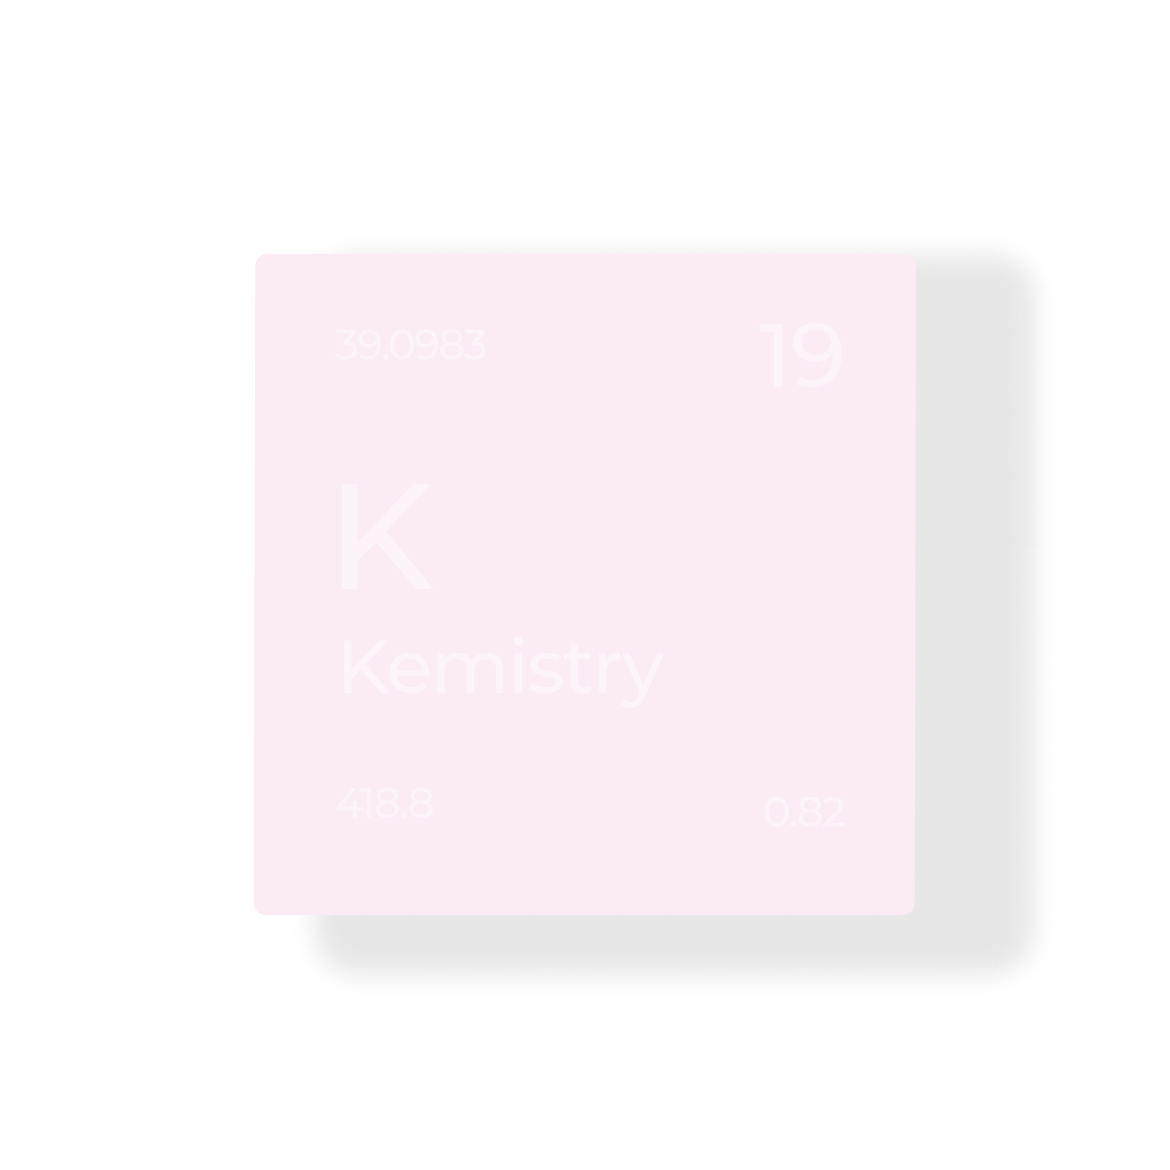 карточка похожая на химический элемент с элементом под названием Kemistry